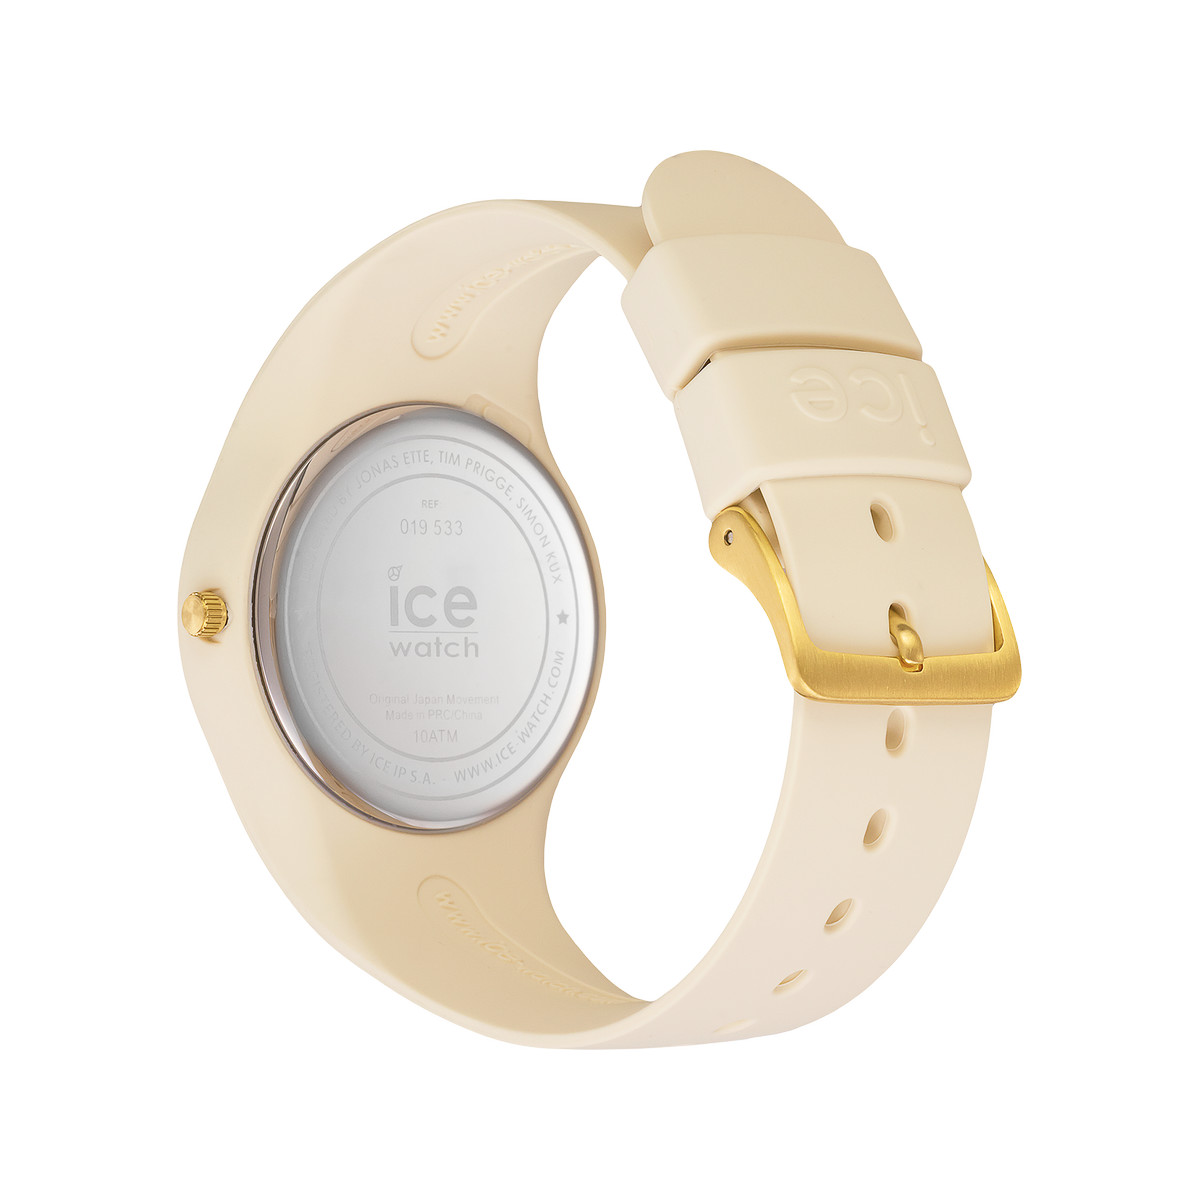 Montre Ice Watch Femme silicone beige - vue 3